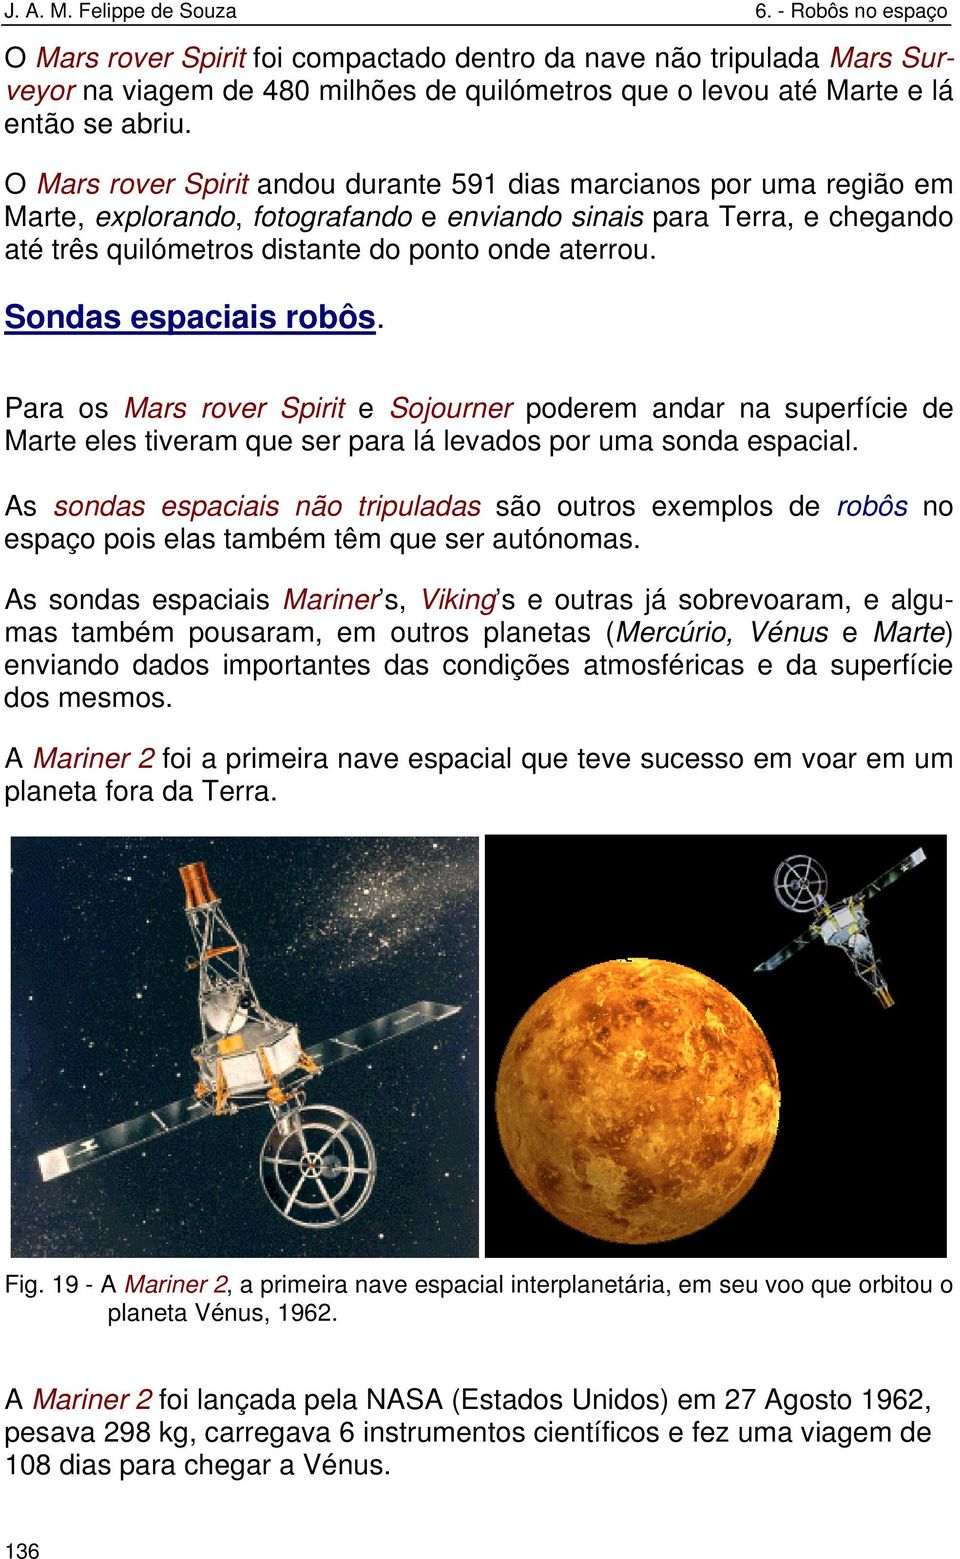 Sondas espaciais robôs. Para os Mars rover Spirit e Sojourner poderem andar na superfície de Marte eles tiveram que ser para lá levados por uma sonda espacial.